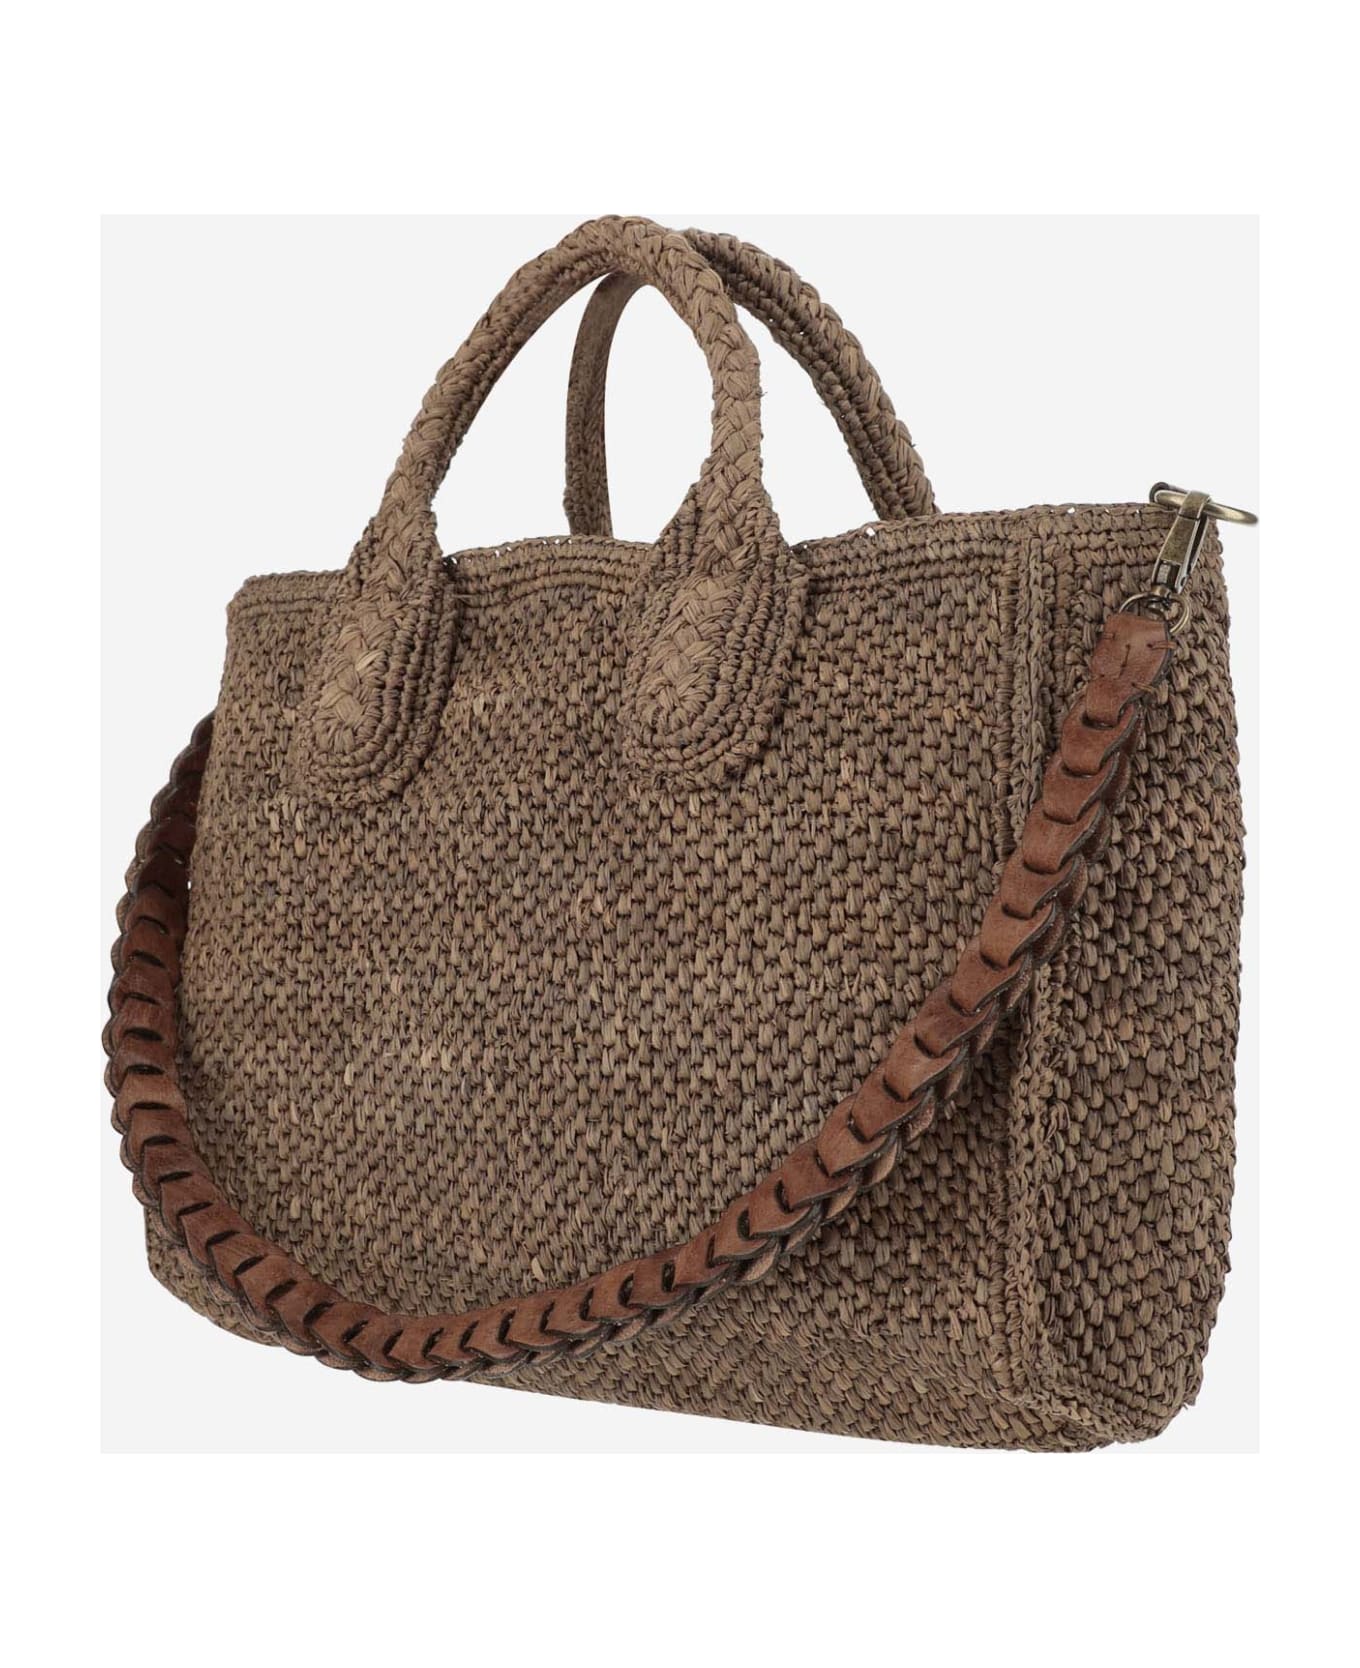 Ibeliv Raffia Bag With Leather Details - Dark tea トートバッグ